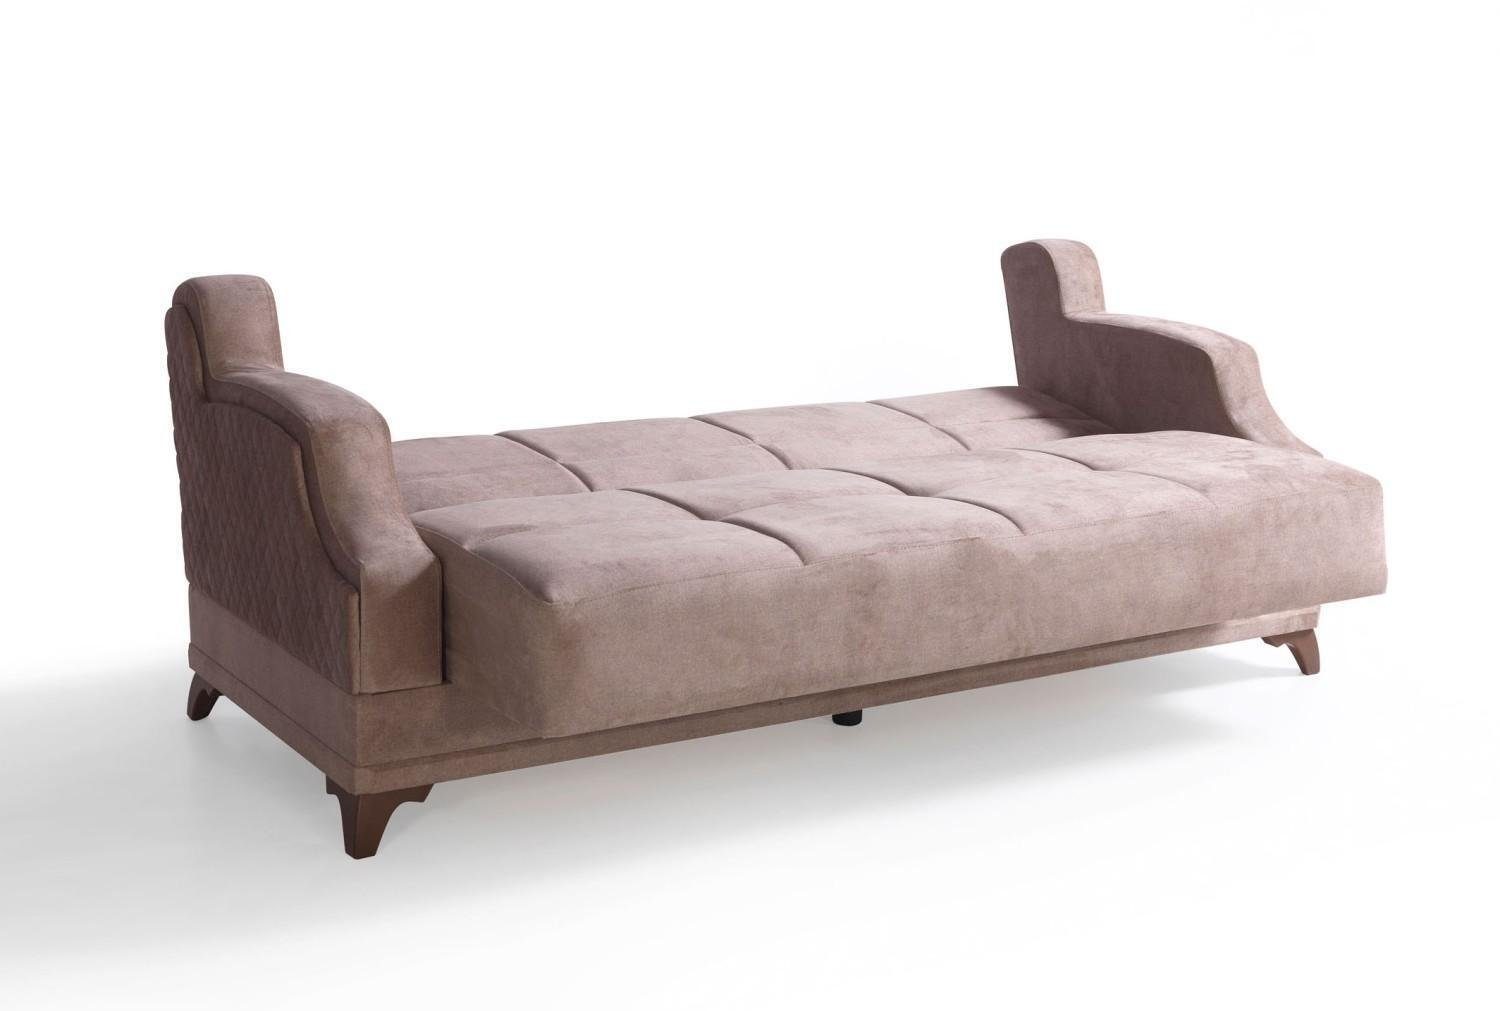 Wohnzimmer-Set Sitzer In Made Europe Möbel Sessel JVmoebel Relax Modern 3+2+1+1 Beige, Garnitur Sofagarnitur